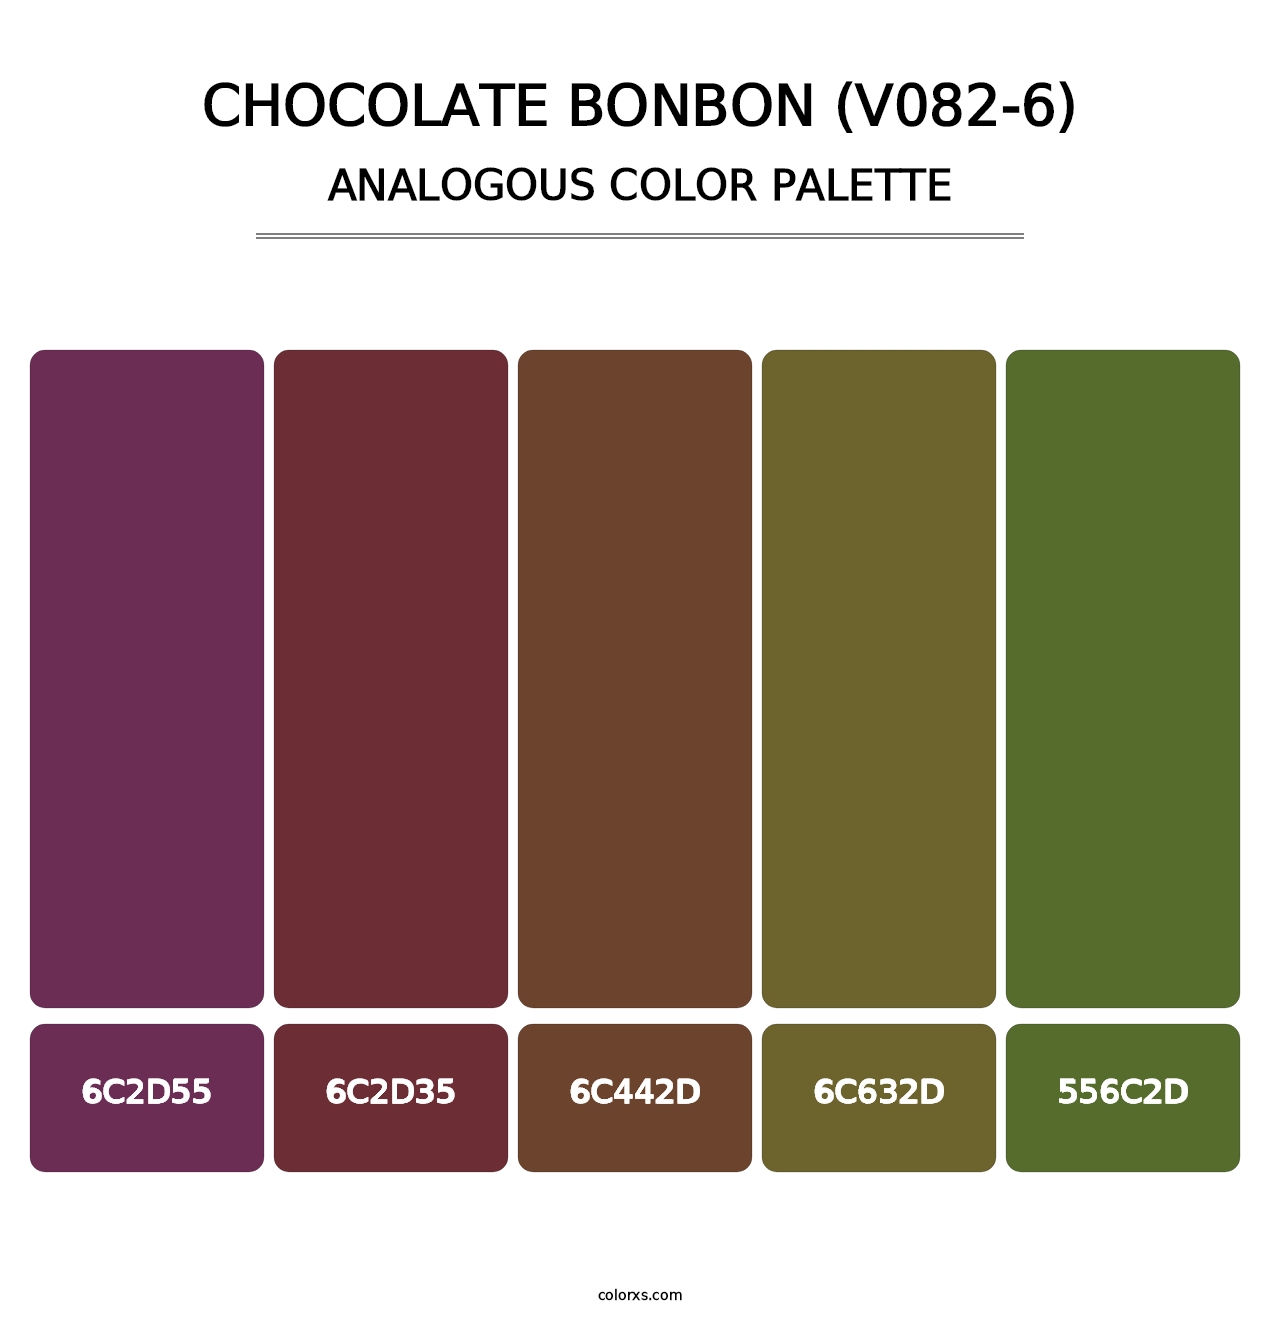 Chocolate Bonbon (V082-6) - Analogous Color Palette